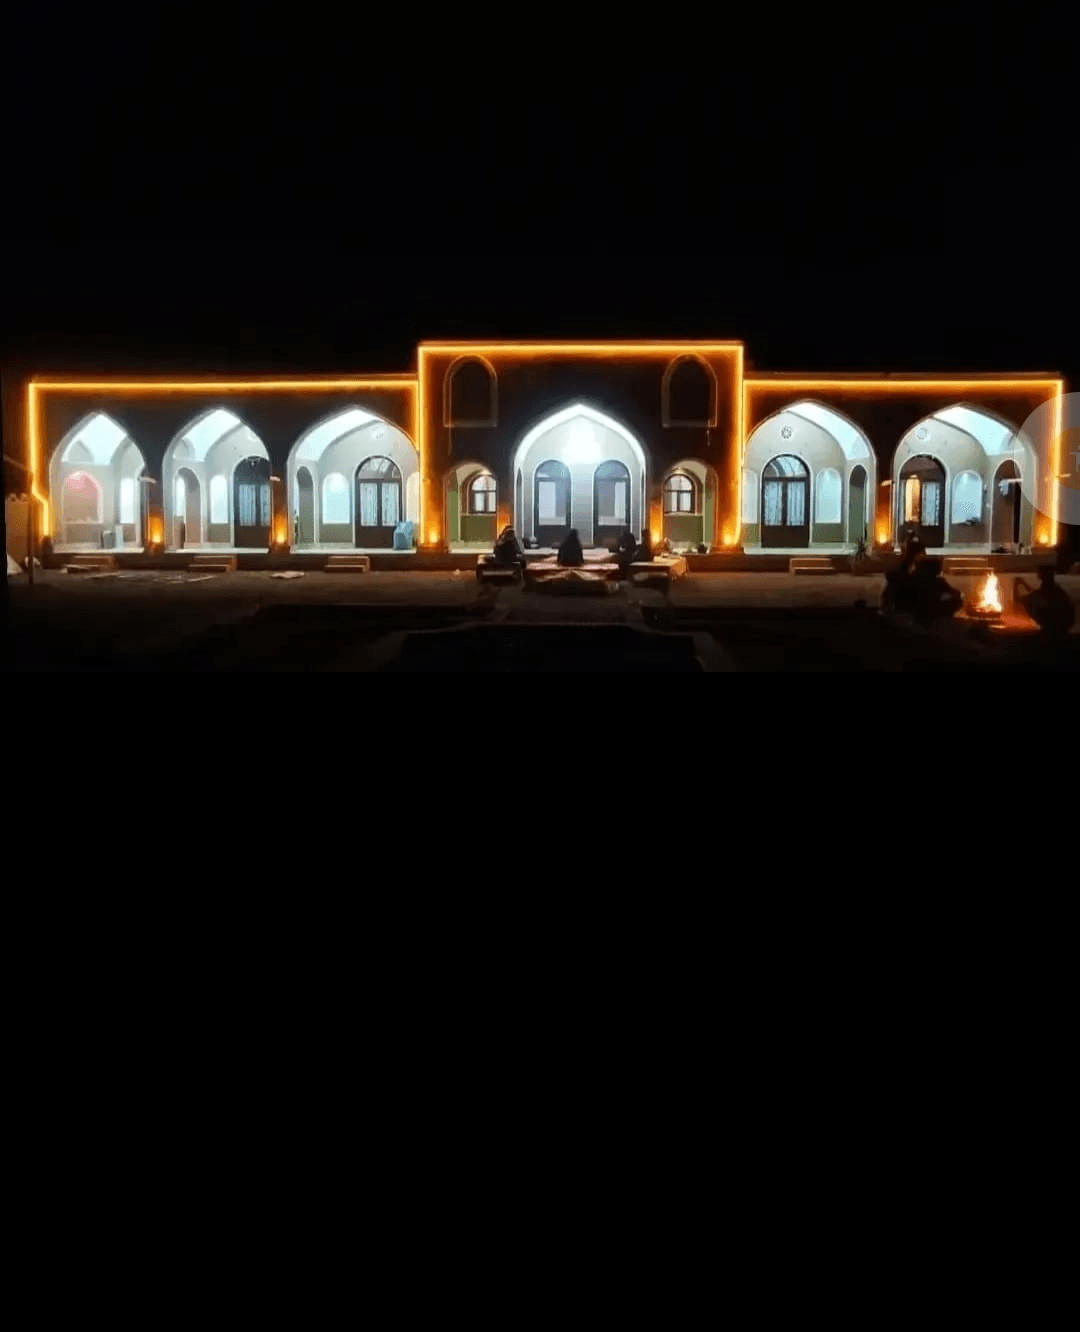 اقامتگاه بومگردی بابارجب در ابوزیدآباد